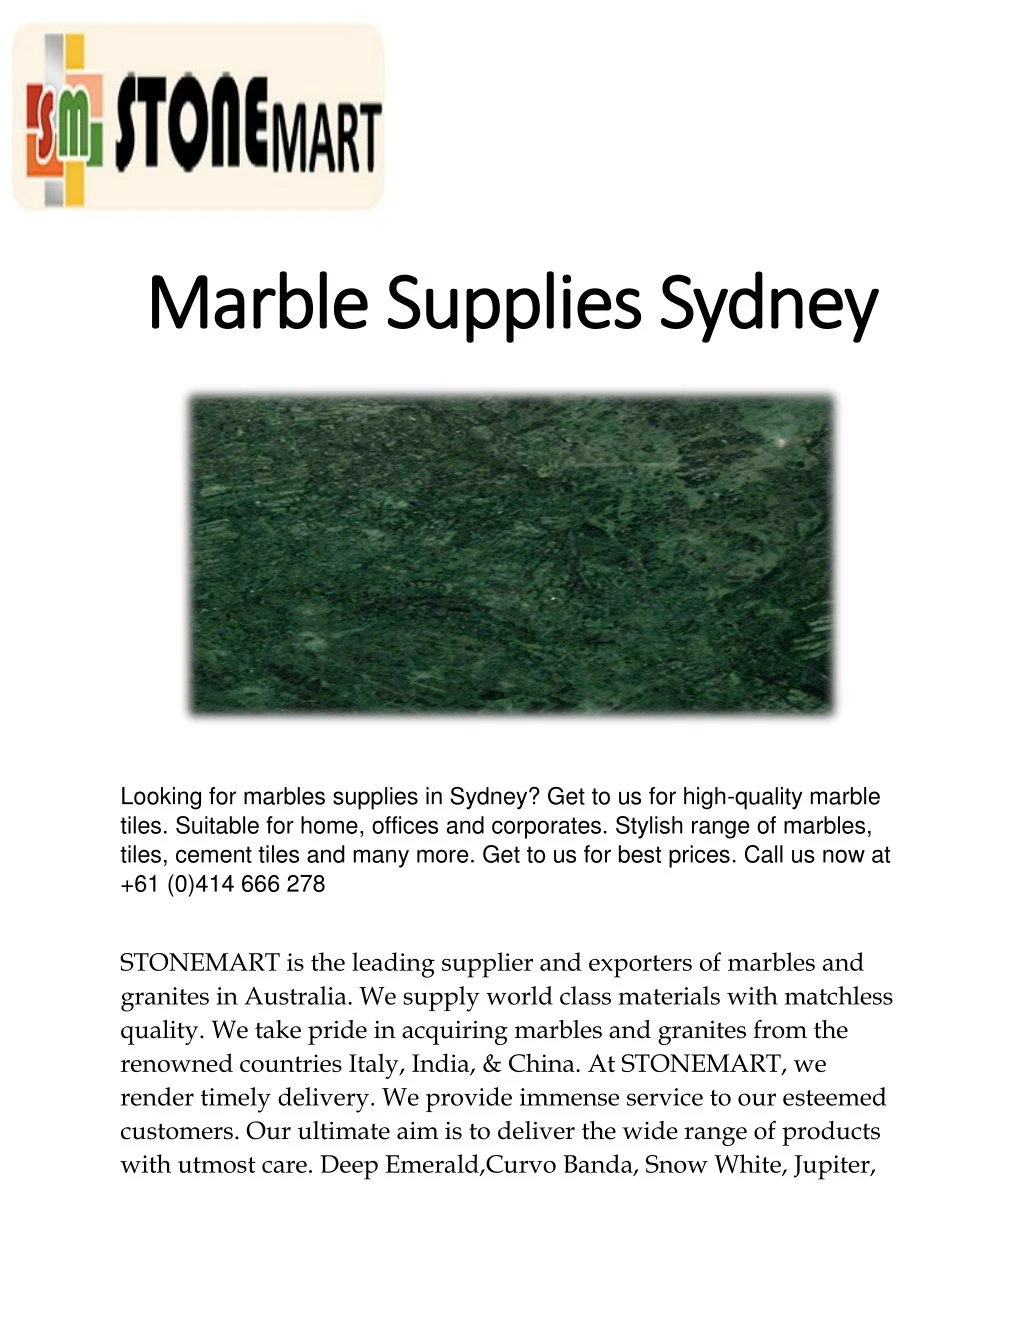 marble supplies sydney marble supplies sydney